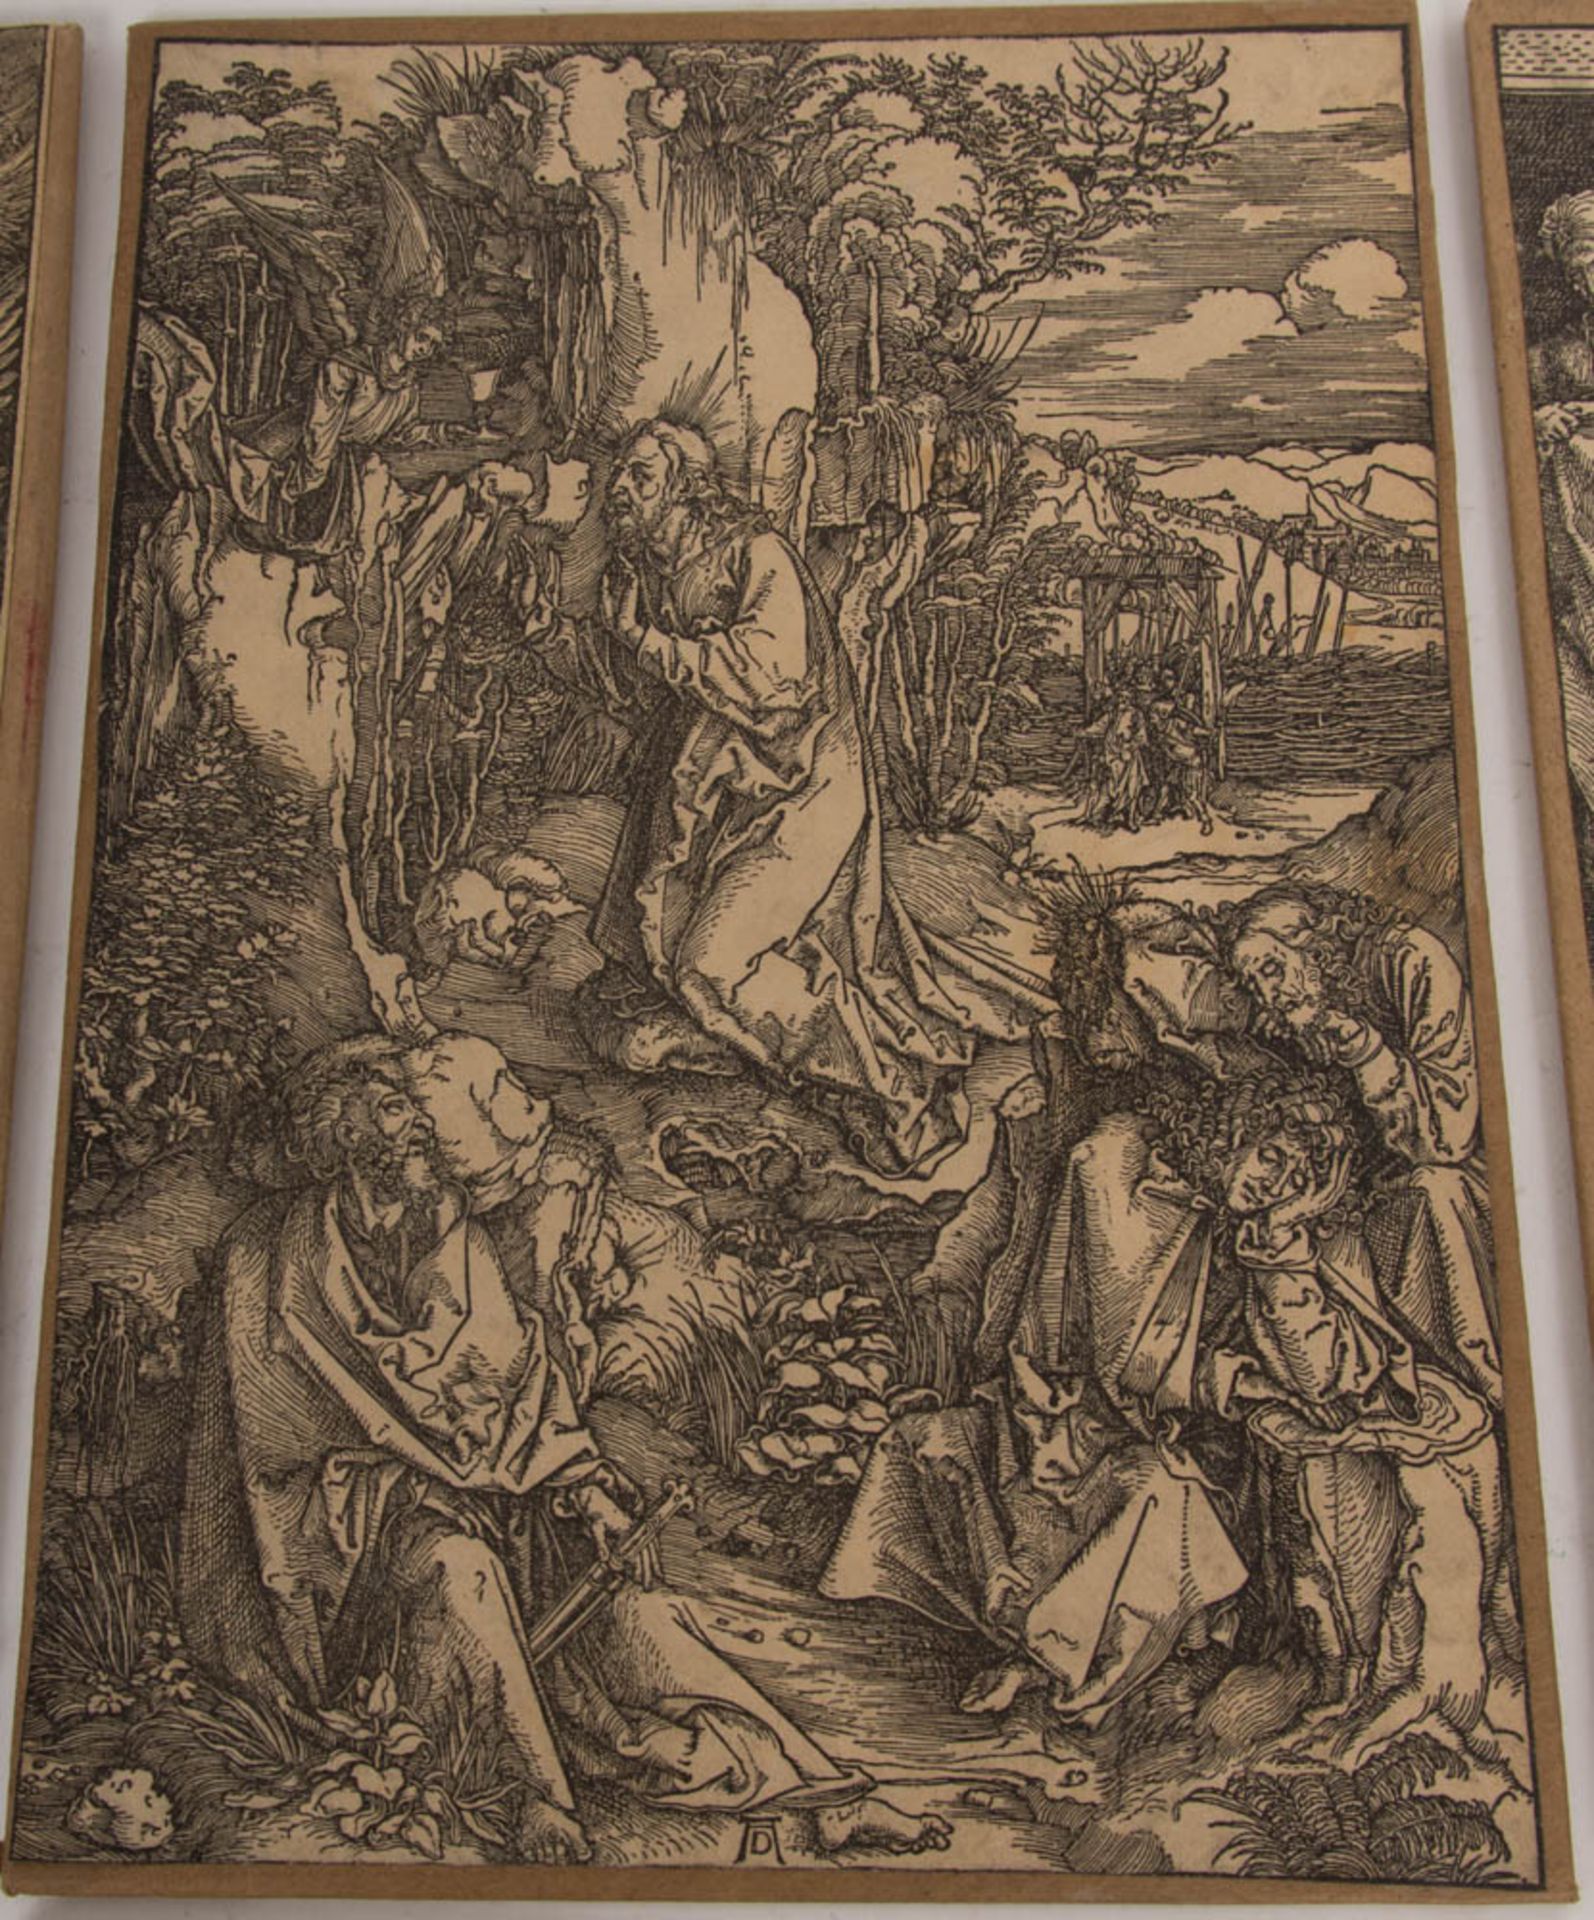 Konvolut von dreizehn Faksimile-Druckplatten zu "Die große Passion" von Albrecht Dürer, wohl Zinkätz - Image 4 of 33